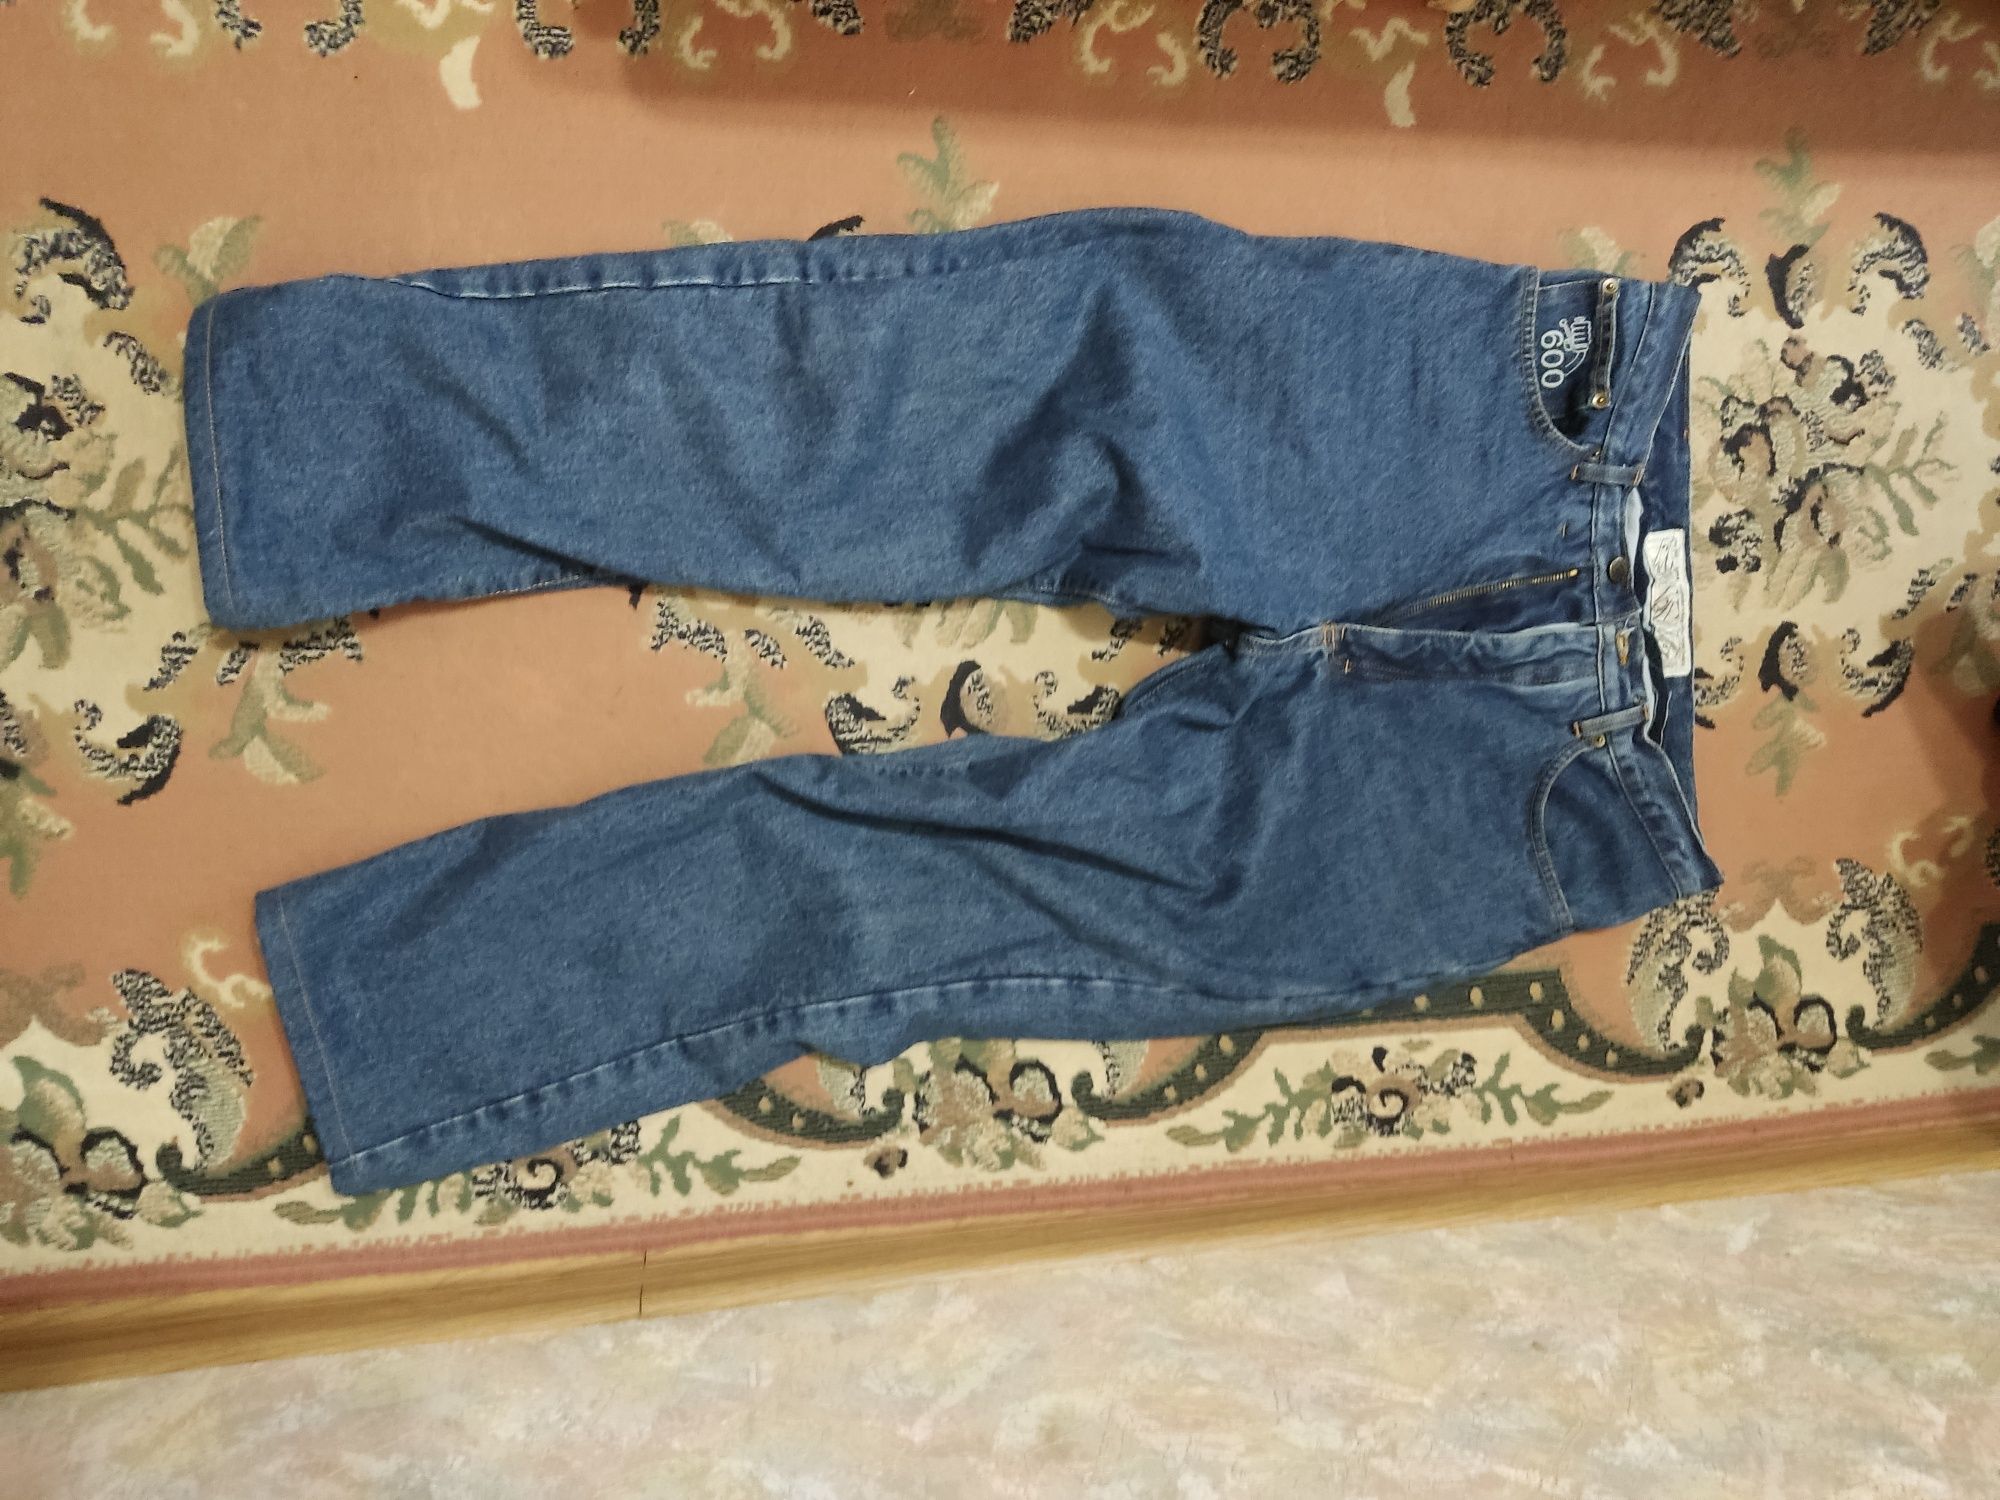 джинсы для BMX наколенниками на клинике можно ставить внутрь штанов